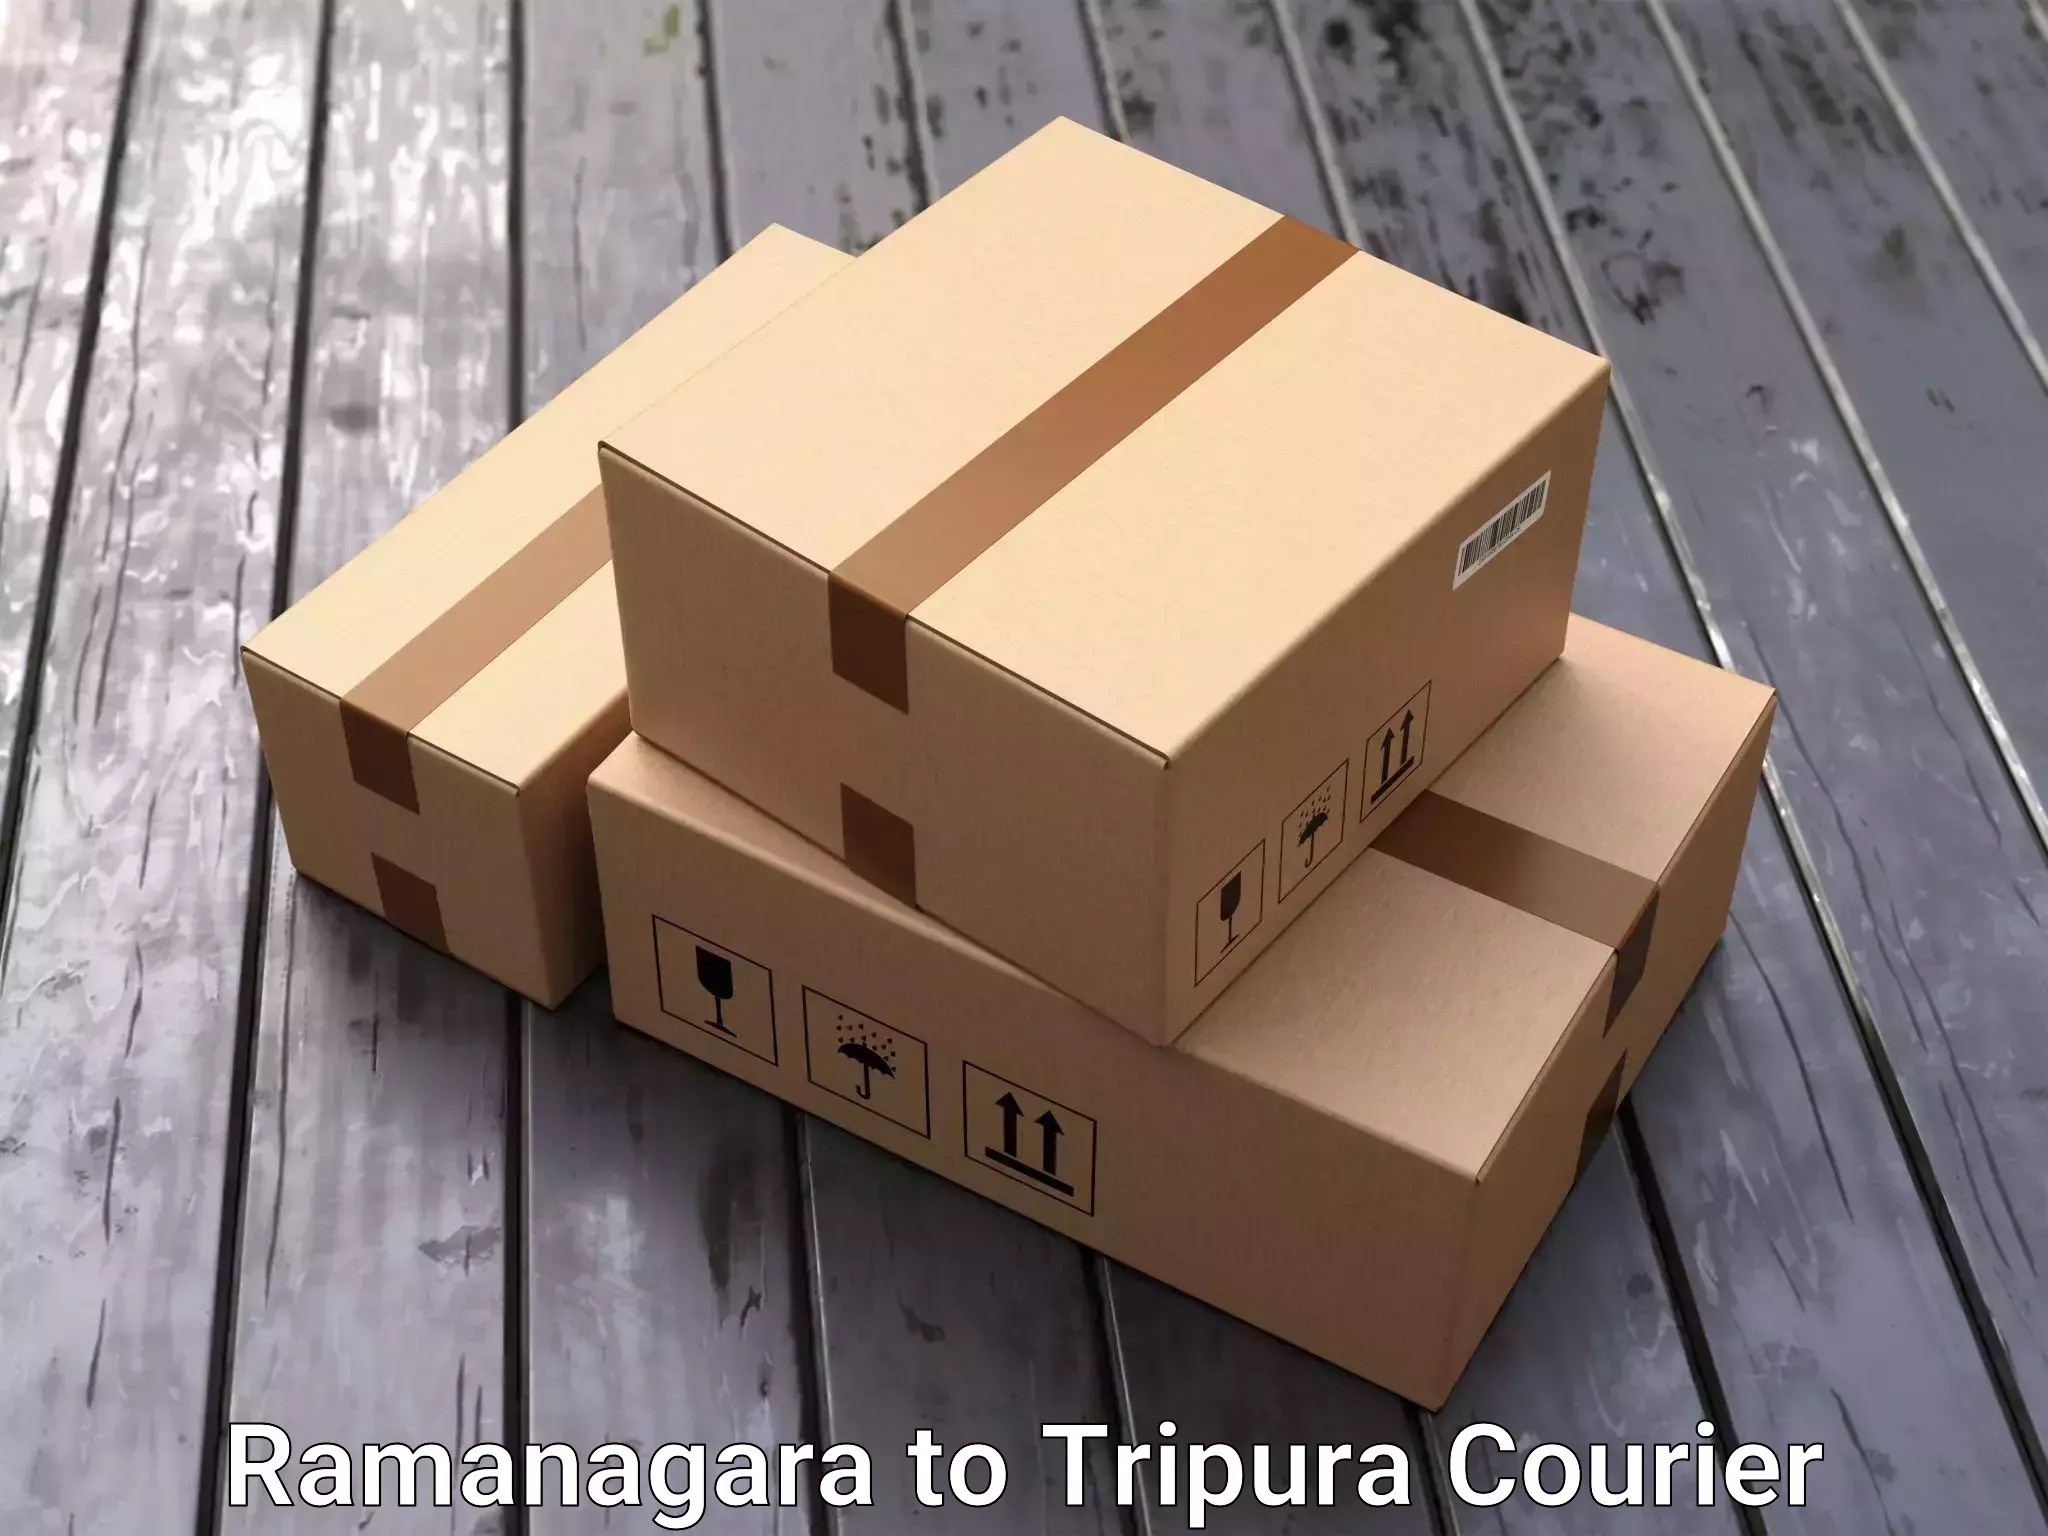 Furniture moving experts Ramanagara to Bishalgarh